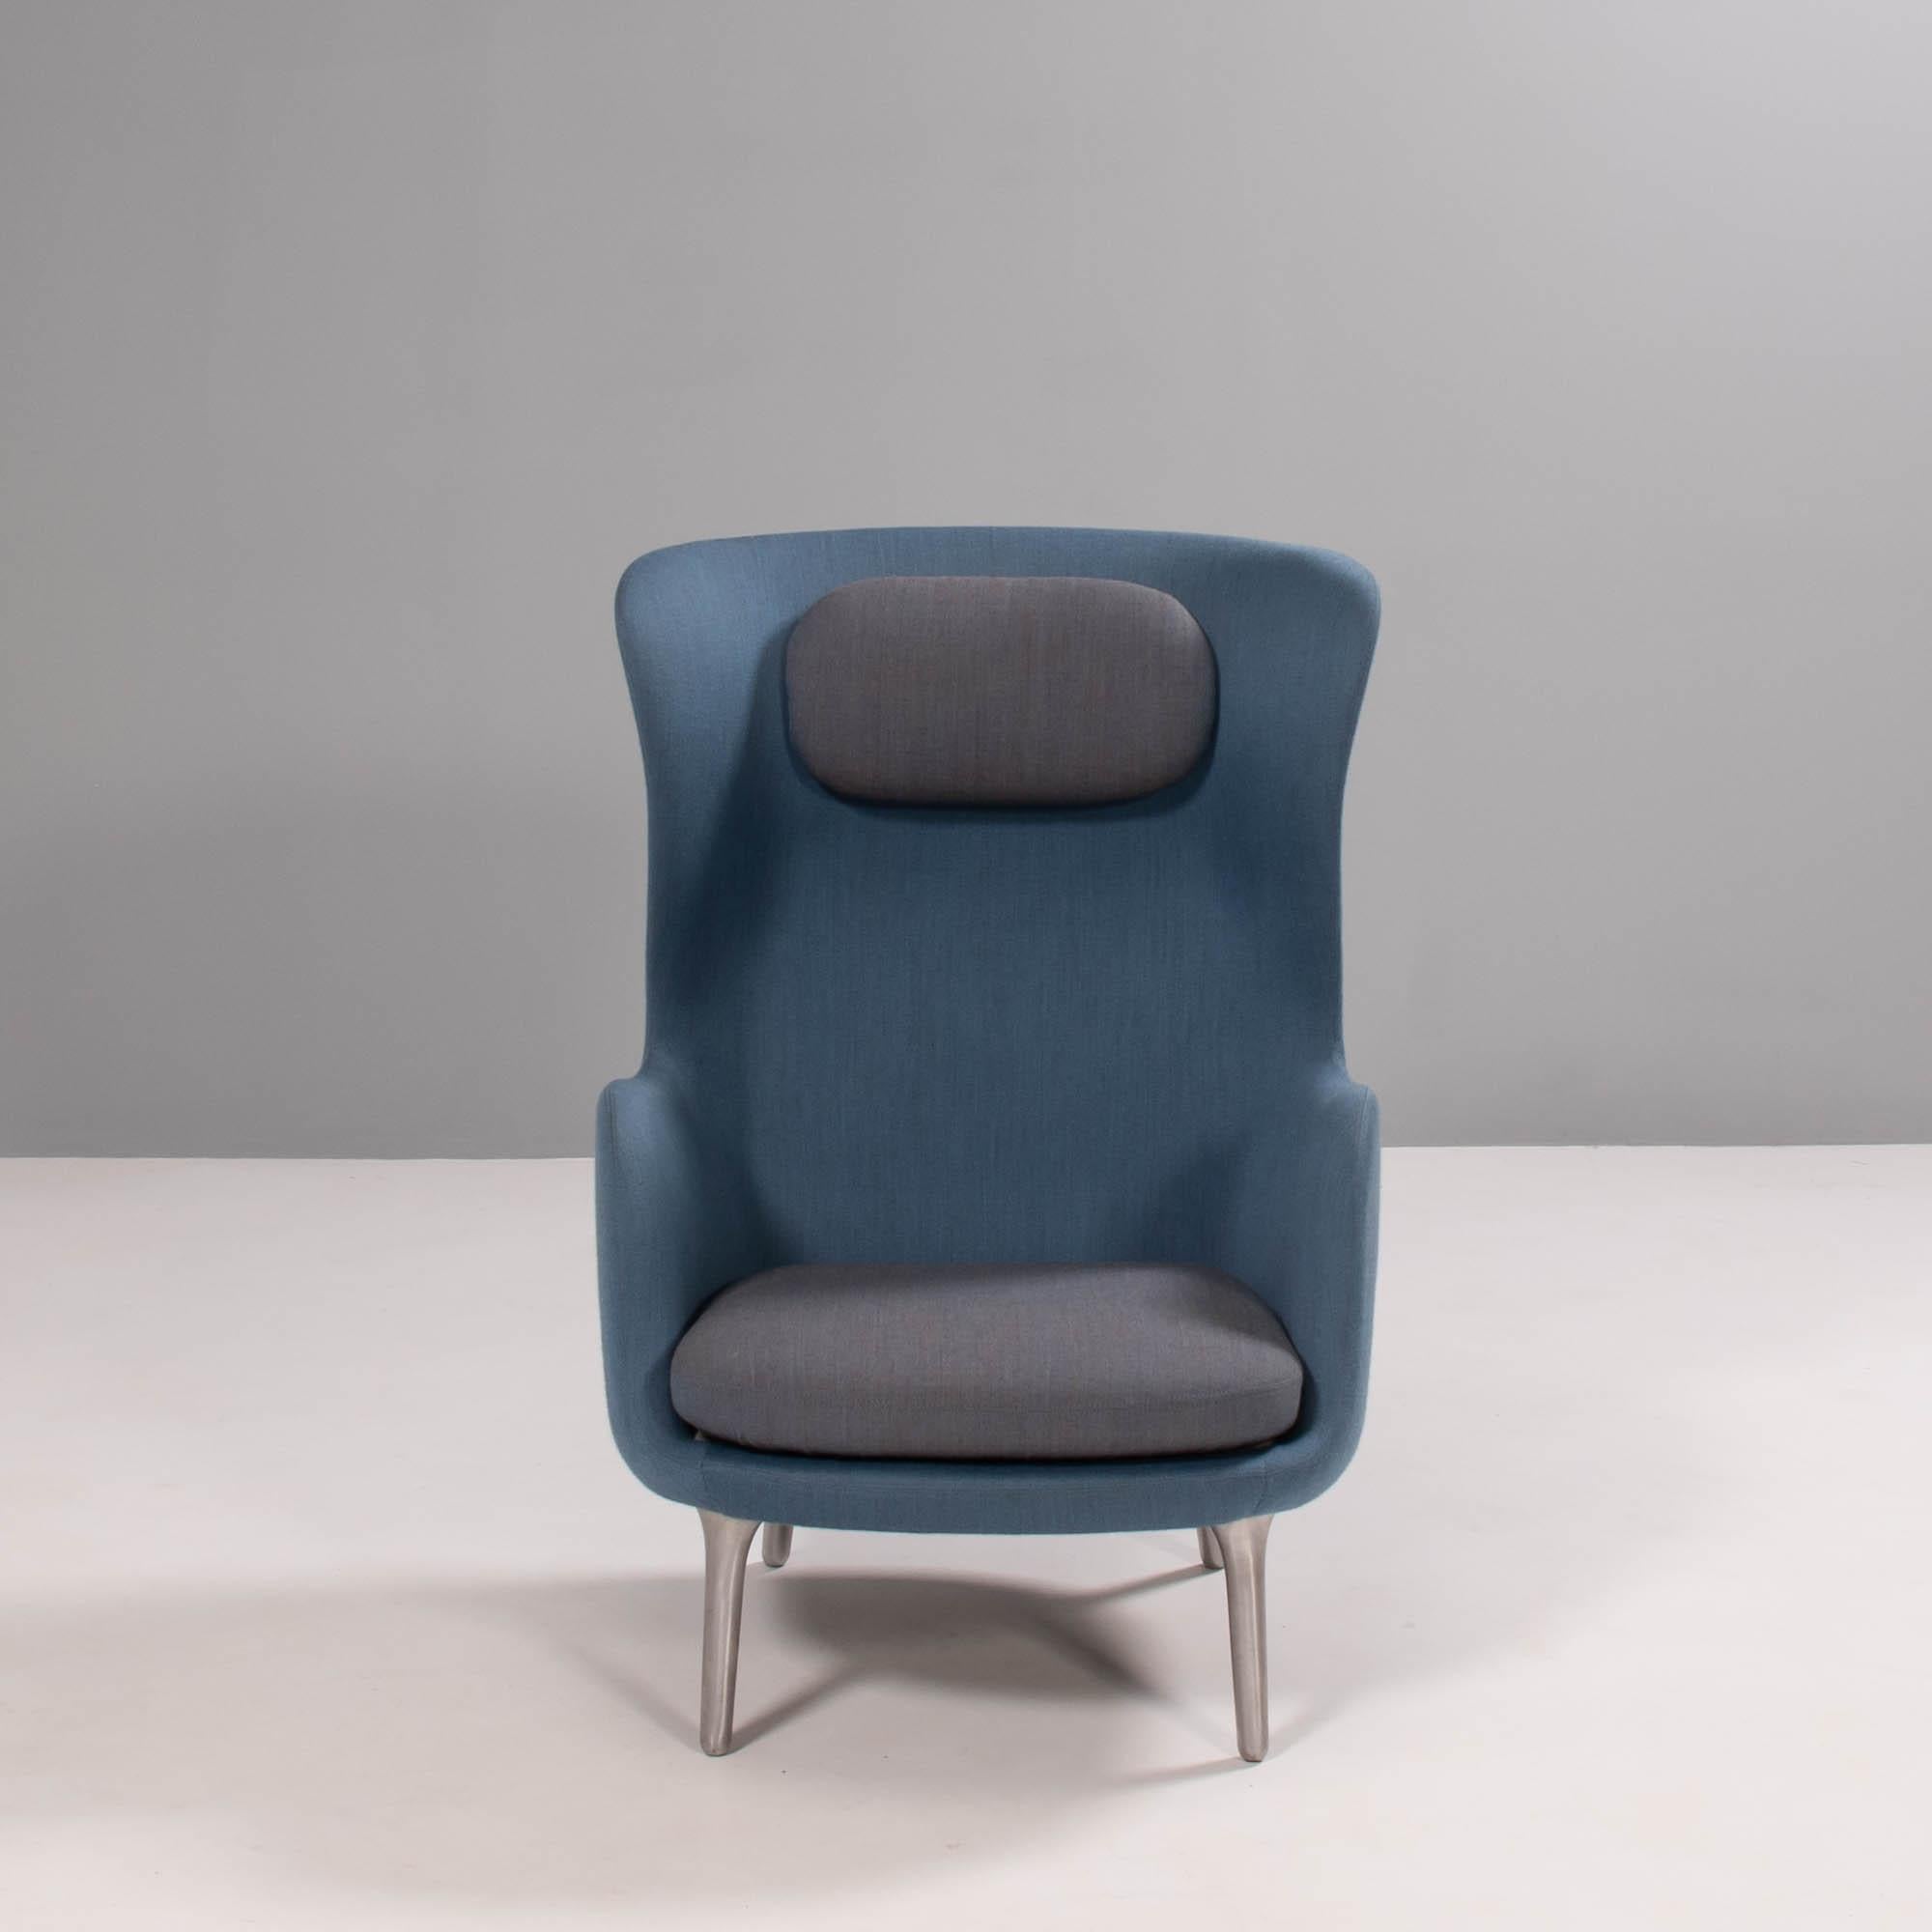 Conçu par Jaime Hayon pour Fritz Hansen, le fauteuil RO lounge tire son nom du mot danois signifiant 